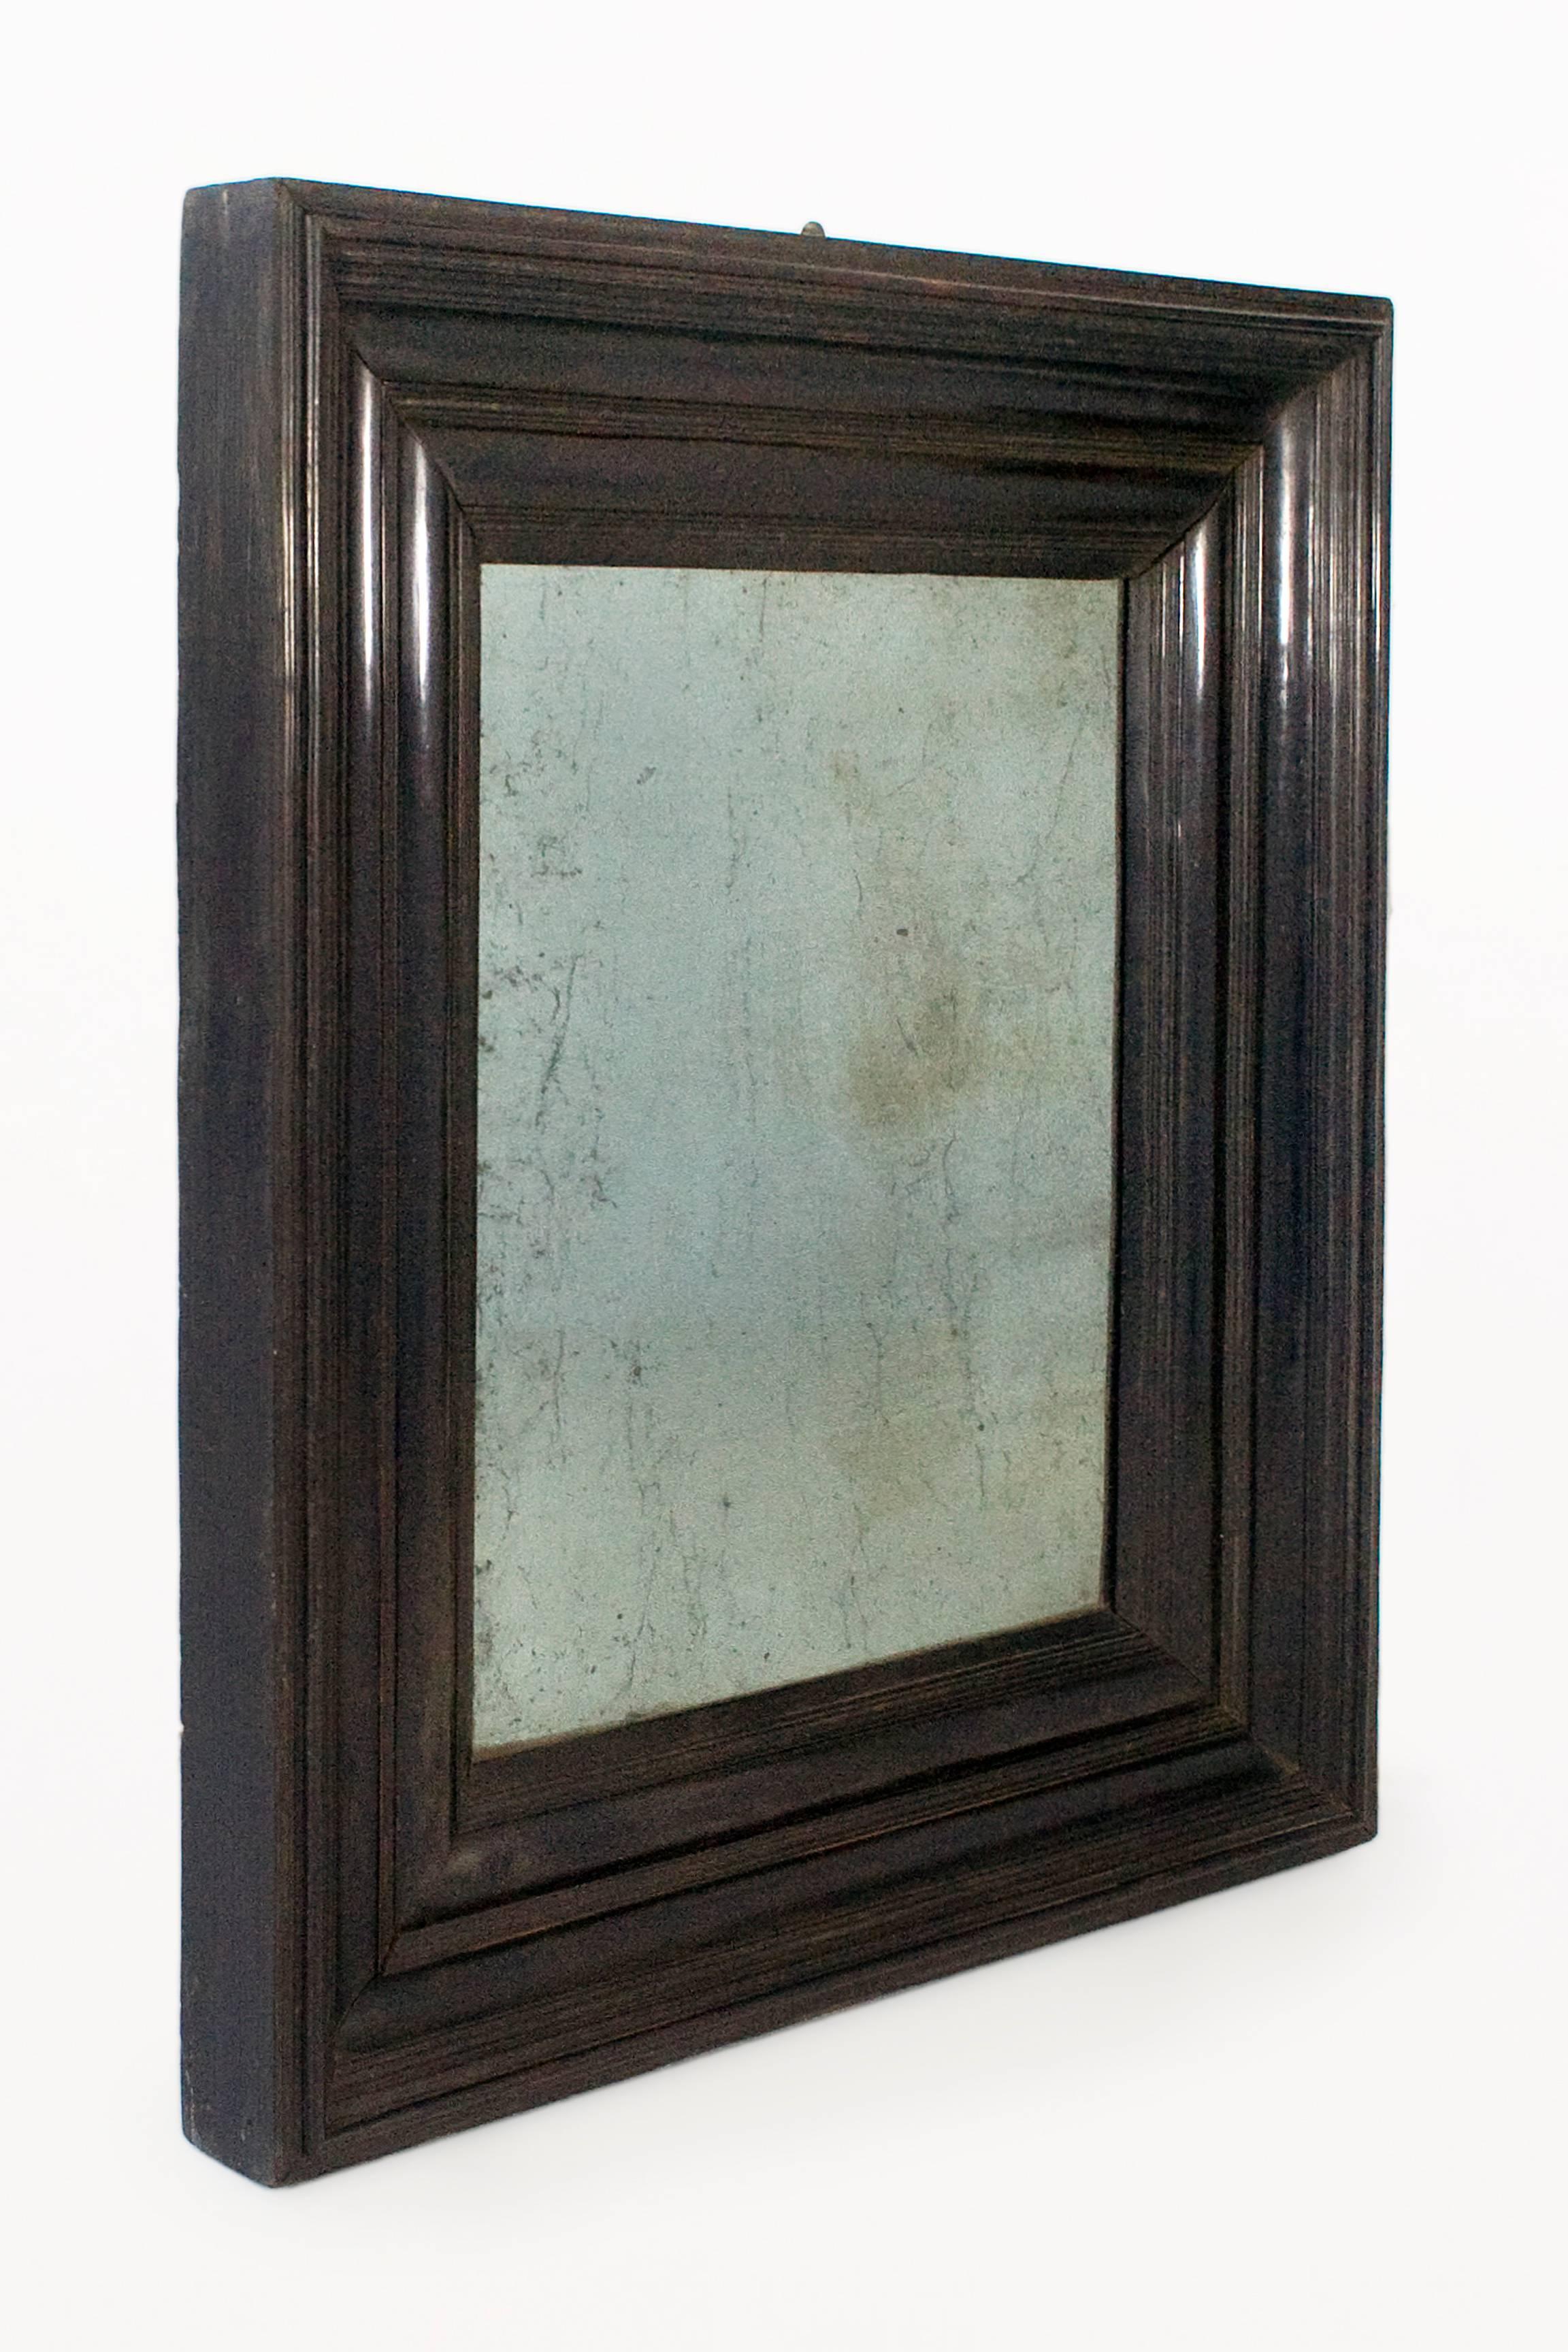 Large black ebony Lombardia mirror
with original mirror
circa 1800, Italy
Very good vintage condition.